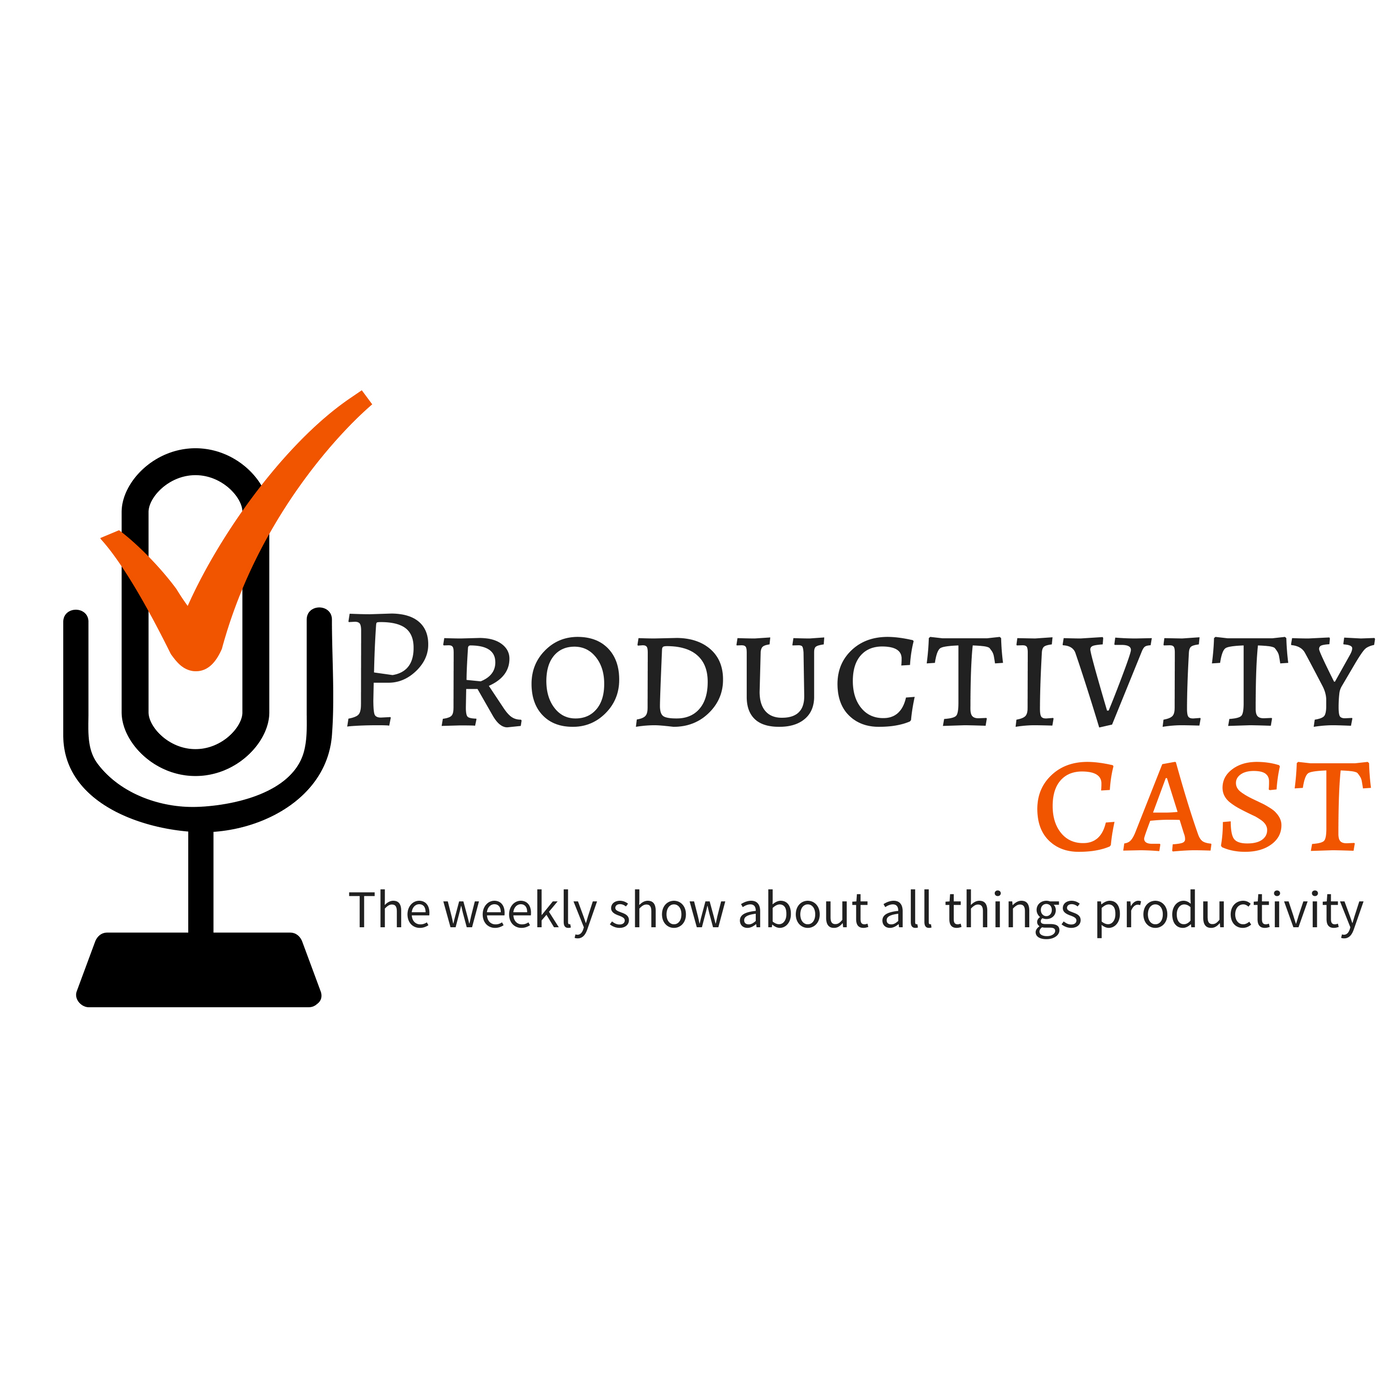 ProductivityCast Logo with tagline